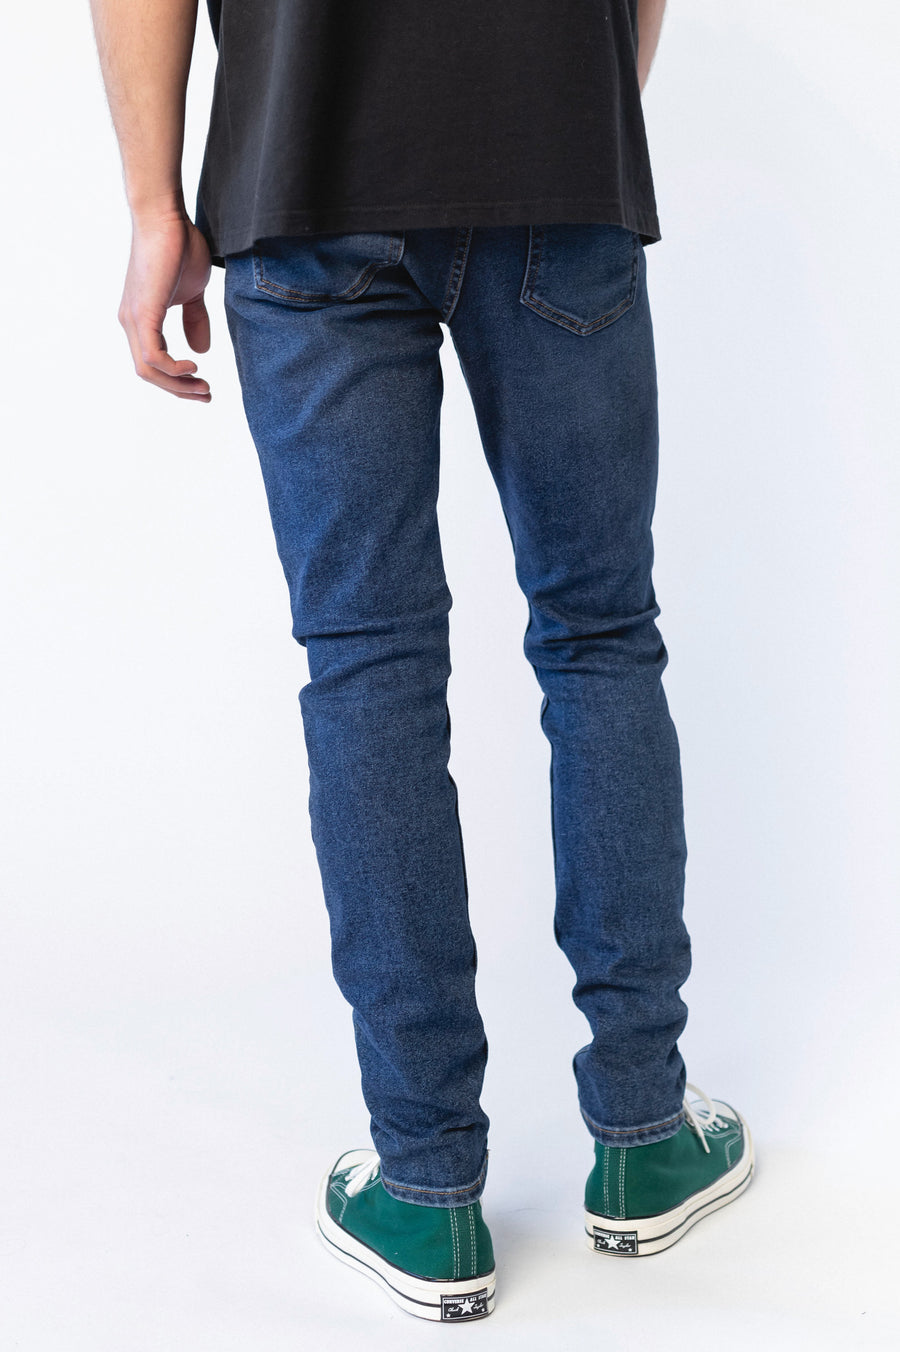 Chase Skinny Jeans - Moat Plain Dark Blue